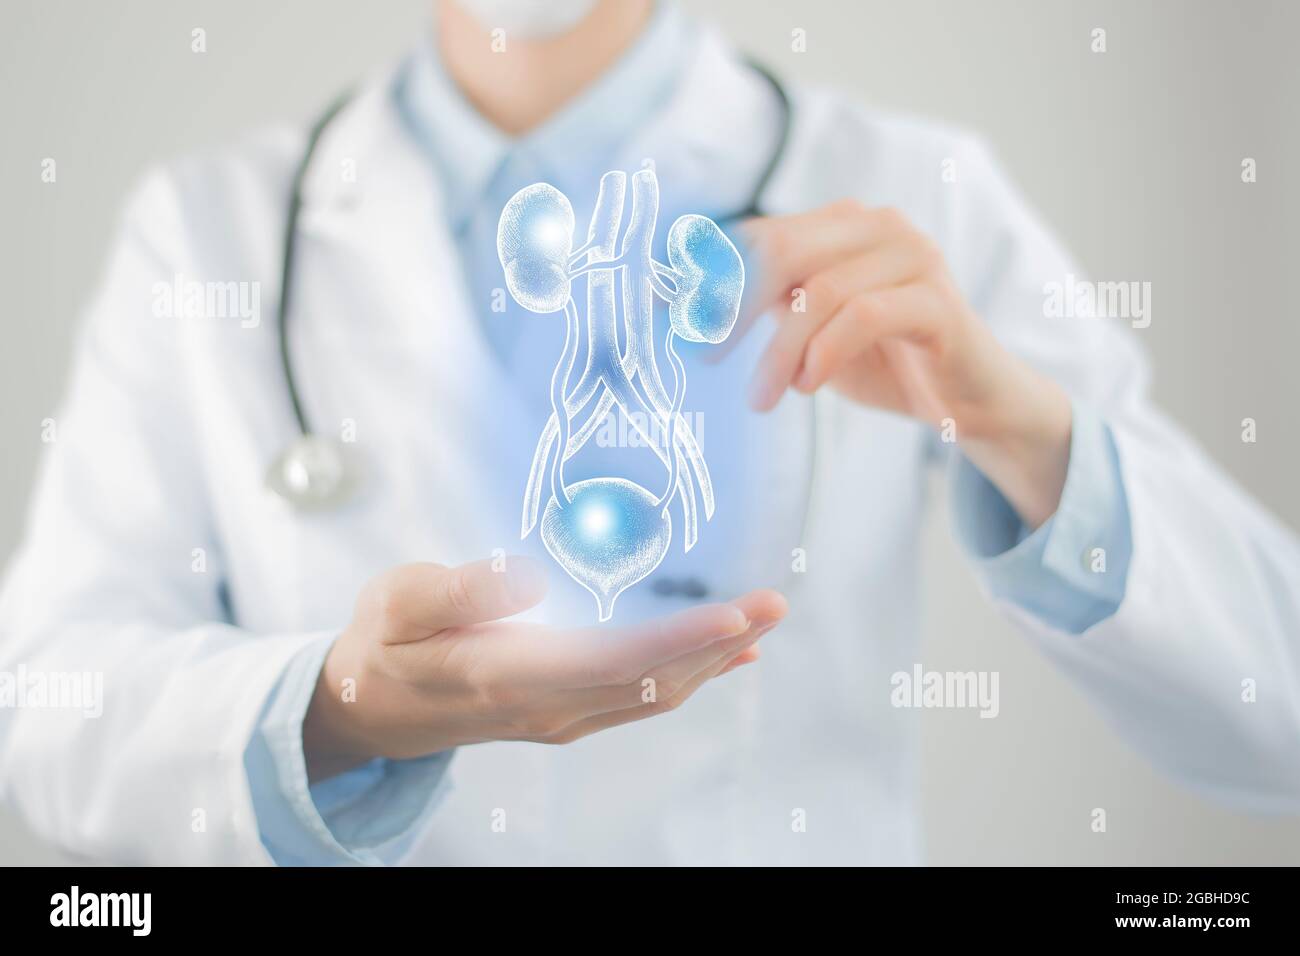 Ärztin hält virtuelle Blase und Nieren in der Hand. Handgezeichnetes menschliches Organ, verschwommenes Foto, rohe Farben. Bestand des Servicekonzepts des Gesundheitskrankenhauses Stockfoto